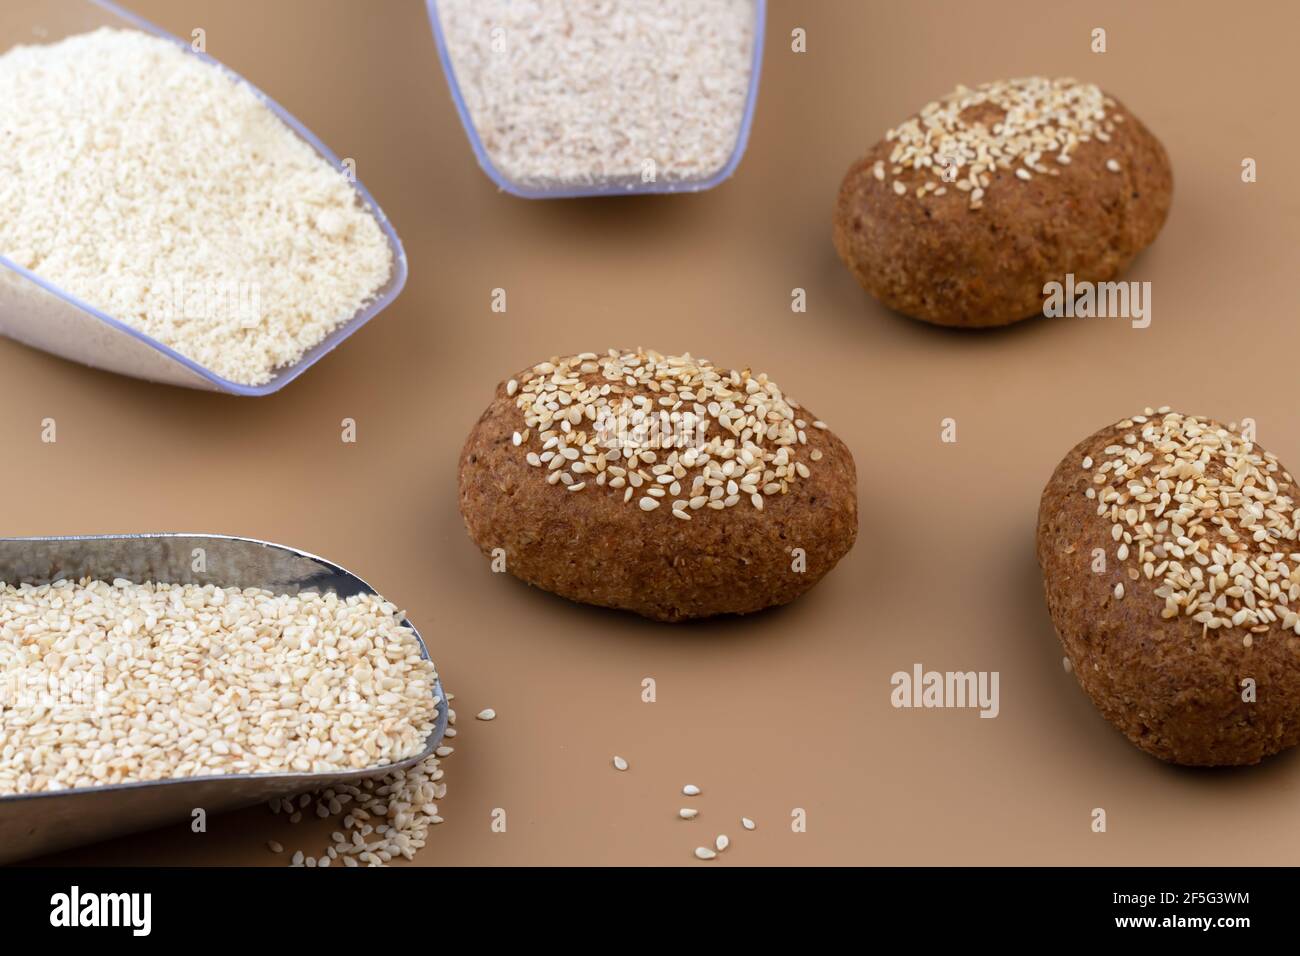 Un saludable pan de keto sin gluten hecho de harina de almendras y cáscara  de psyllium, rociado con semillas de sésamo. Horneando los ingredientes en  las palas. Dieta cetogénica Fotografía de stock -